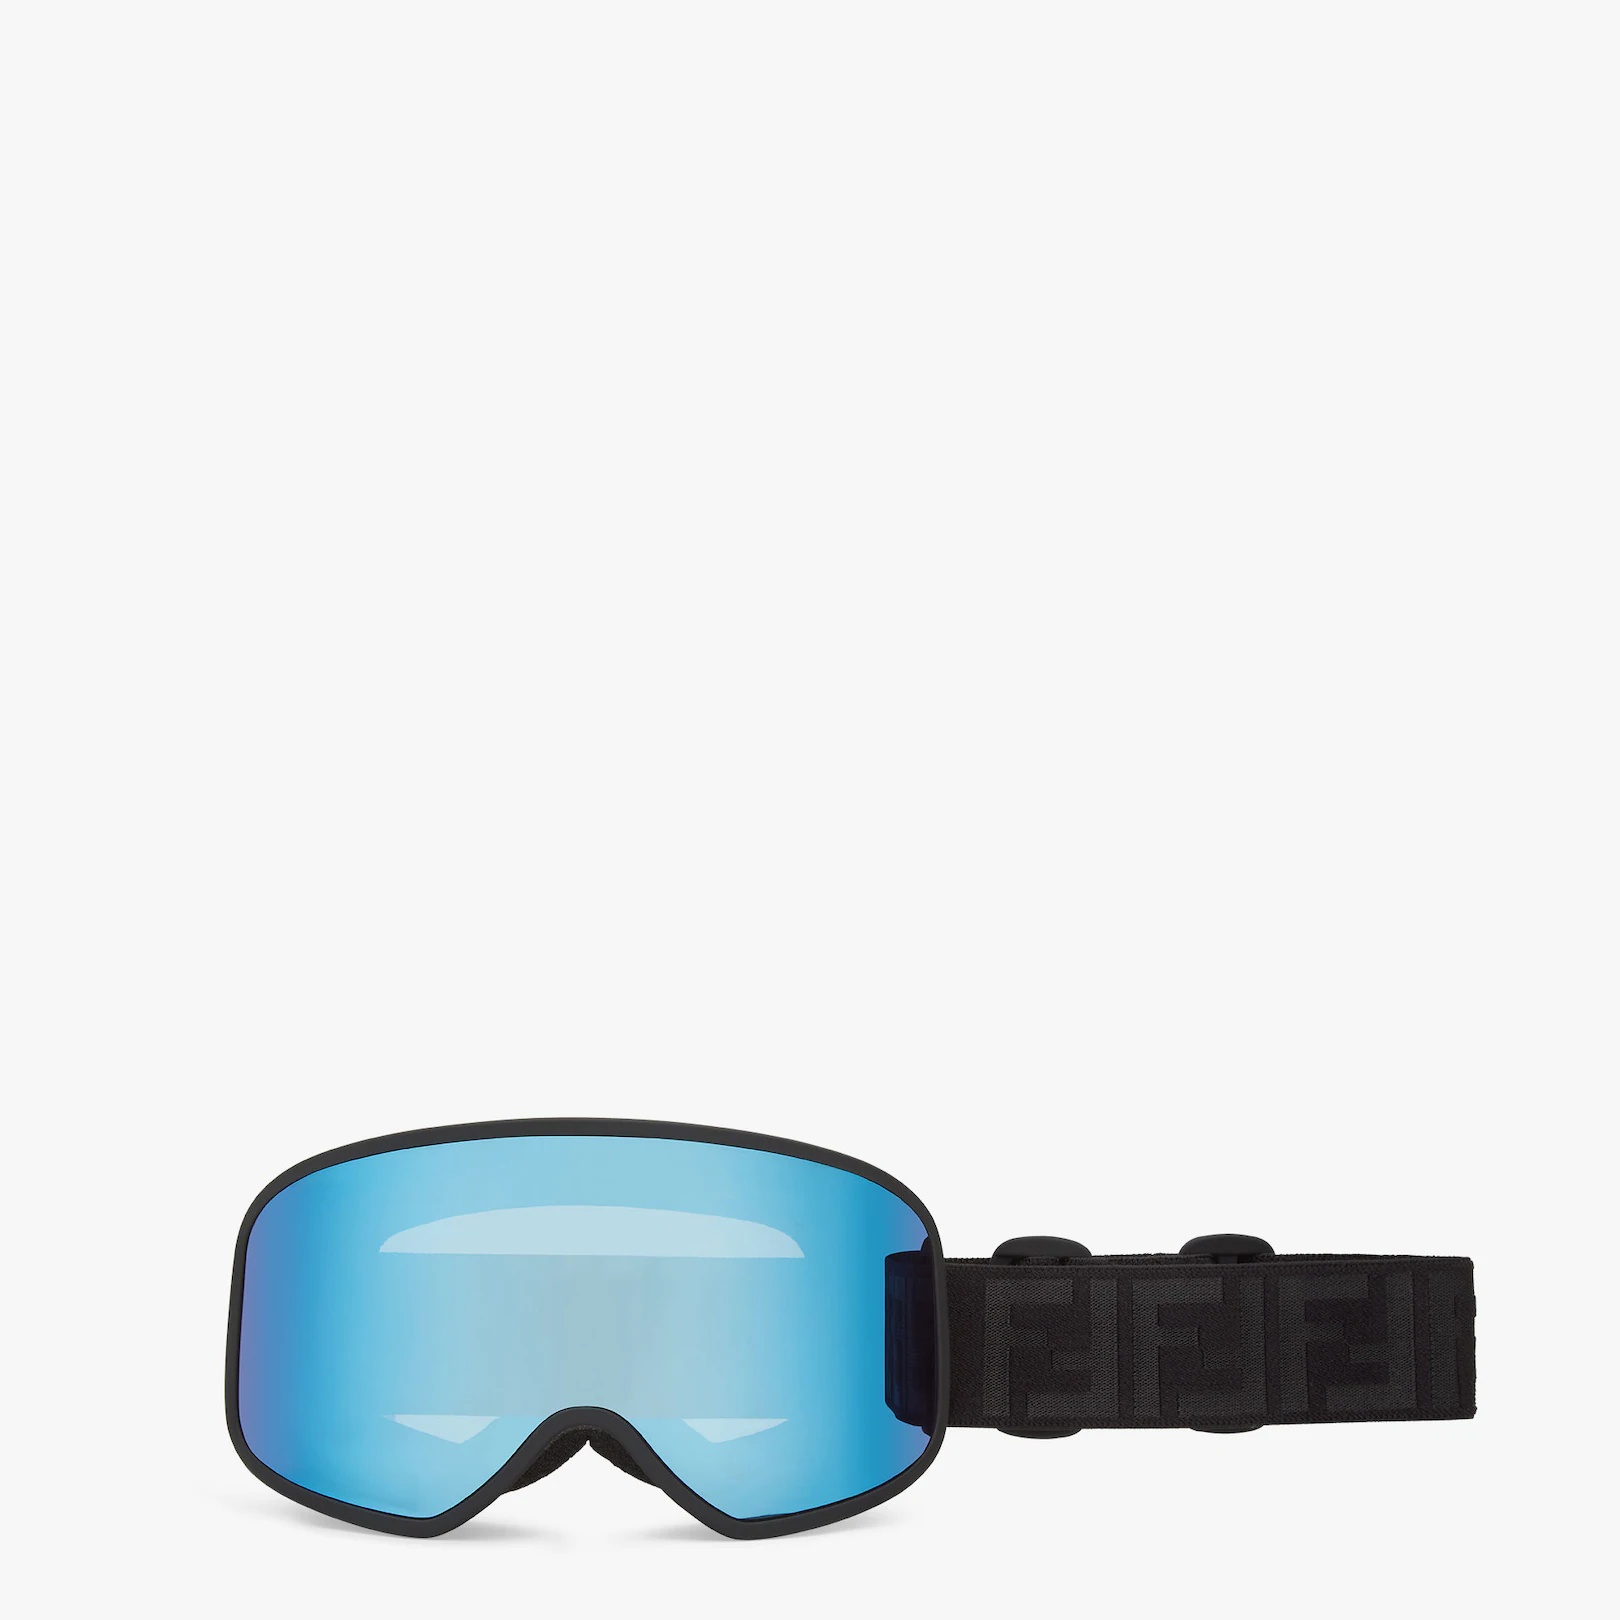 Black goggles - 1